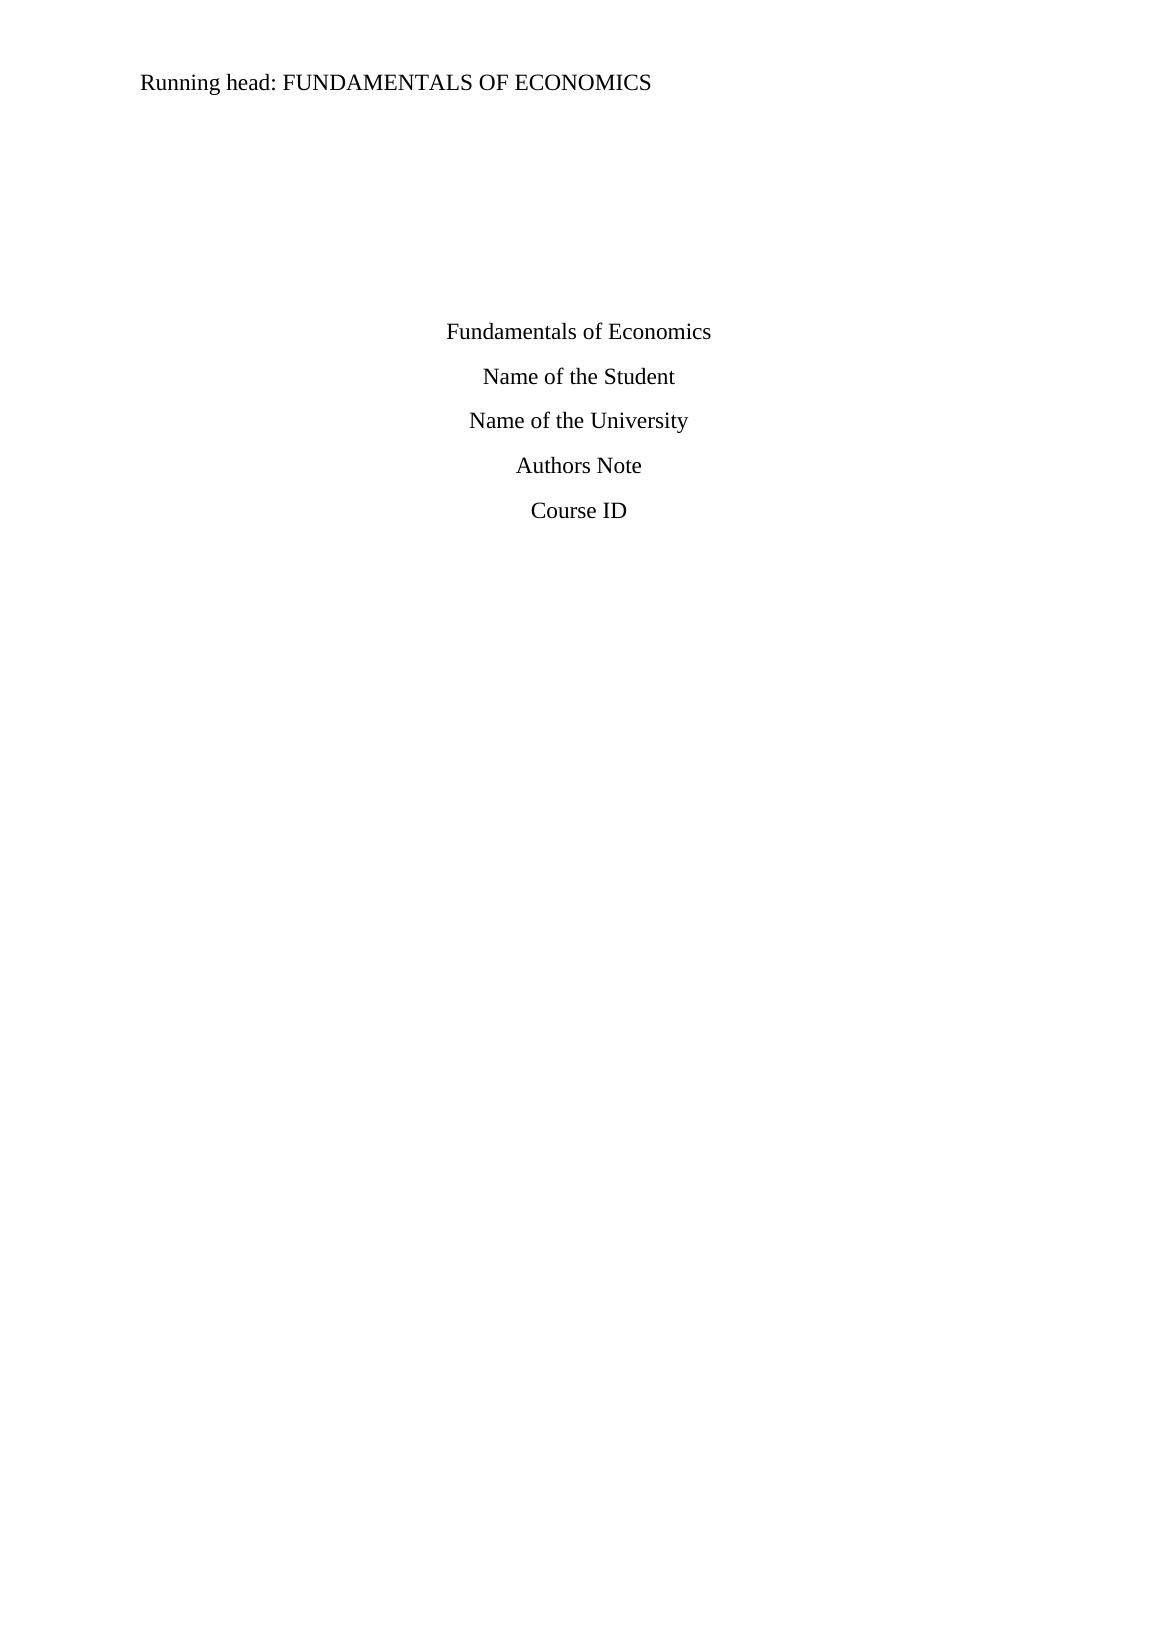 Fundamentals of economics assignment_1